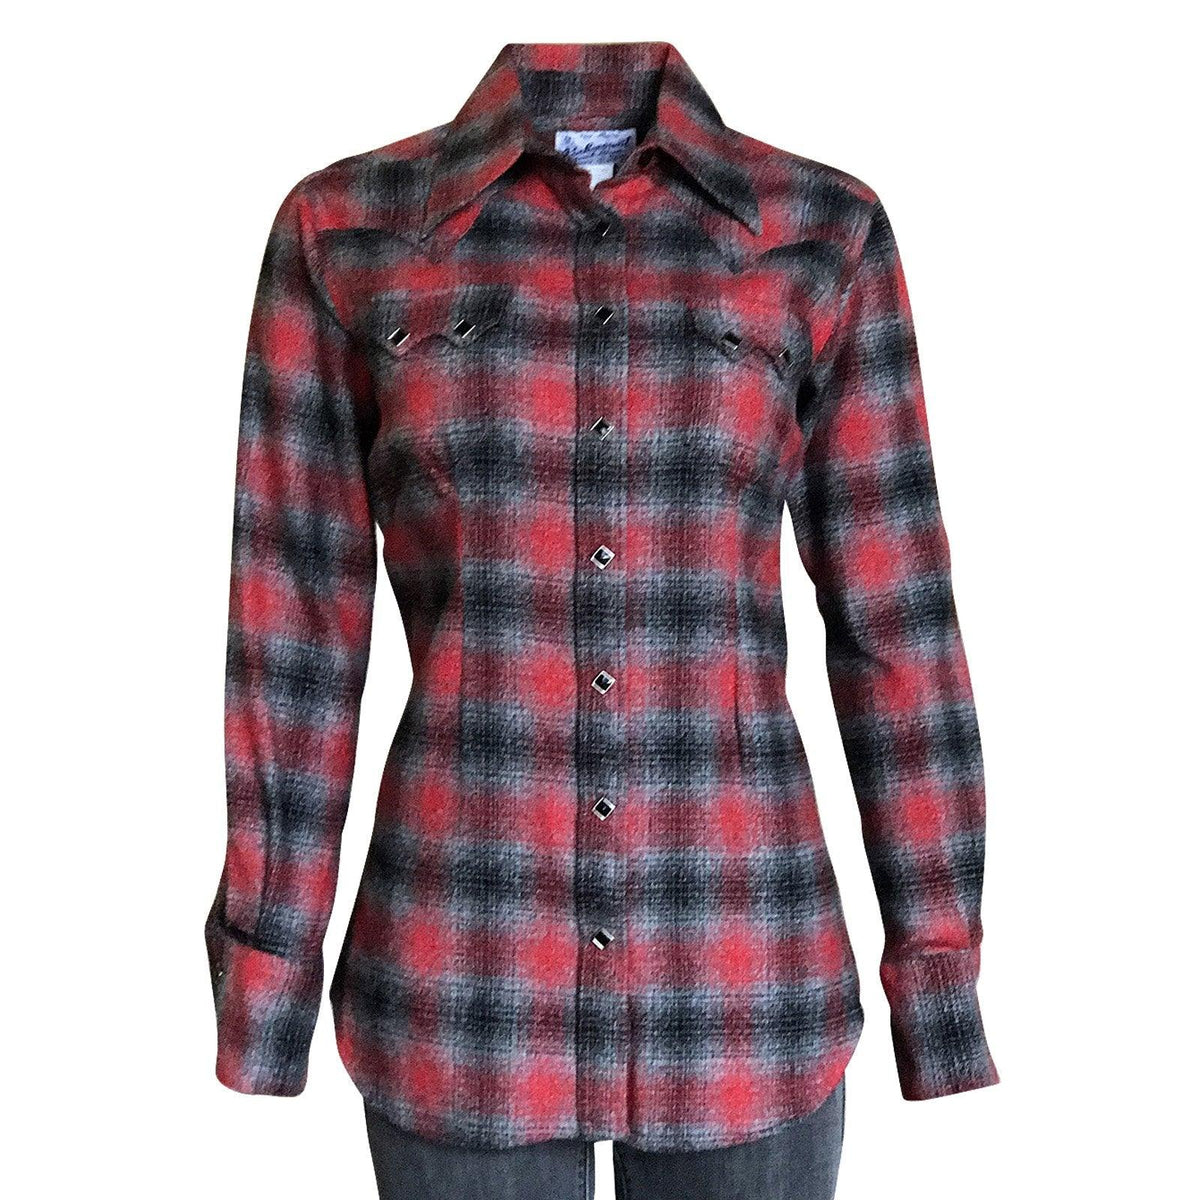 Women's Plush Red & Grey Plaid Flannel Western Shirt - Flyclothing LLC